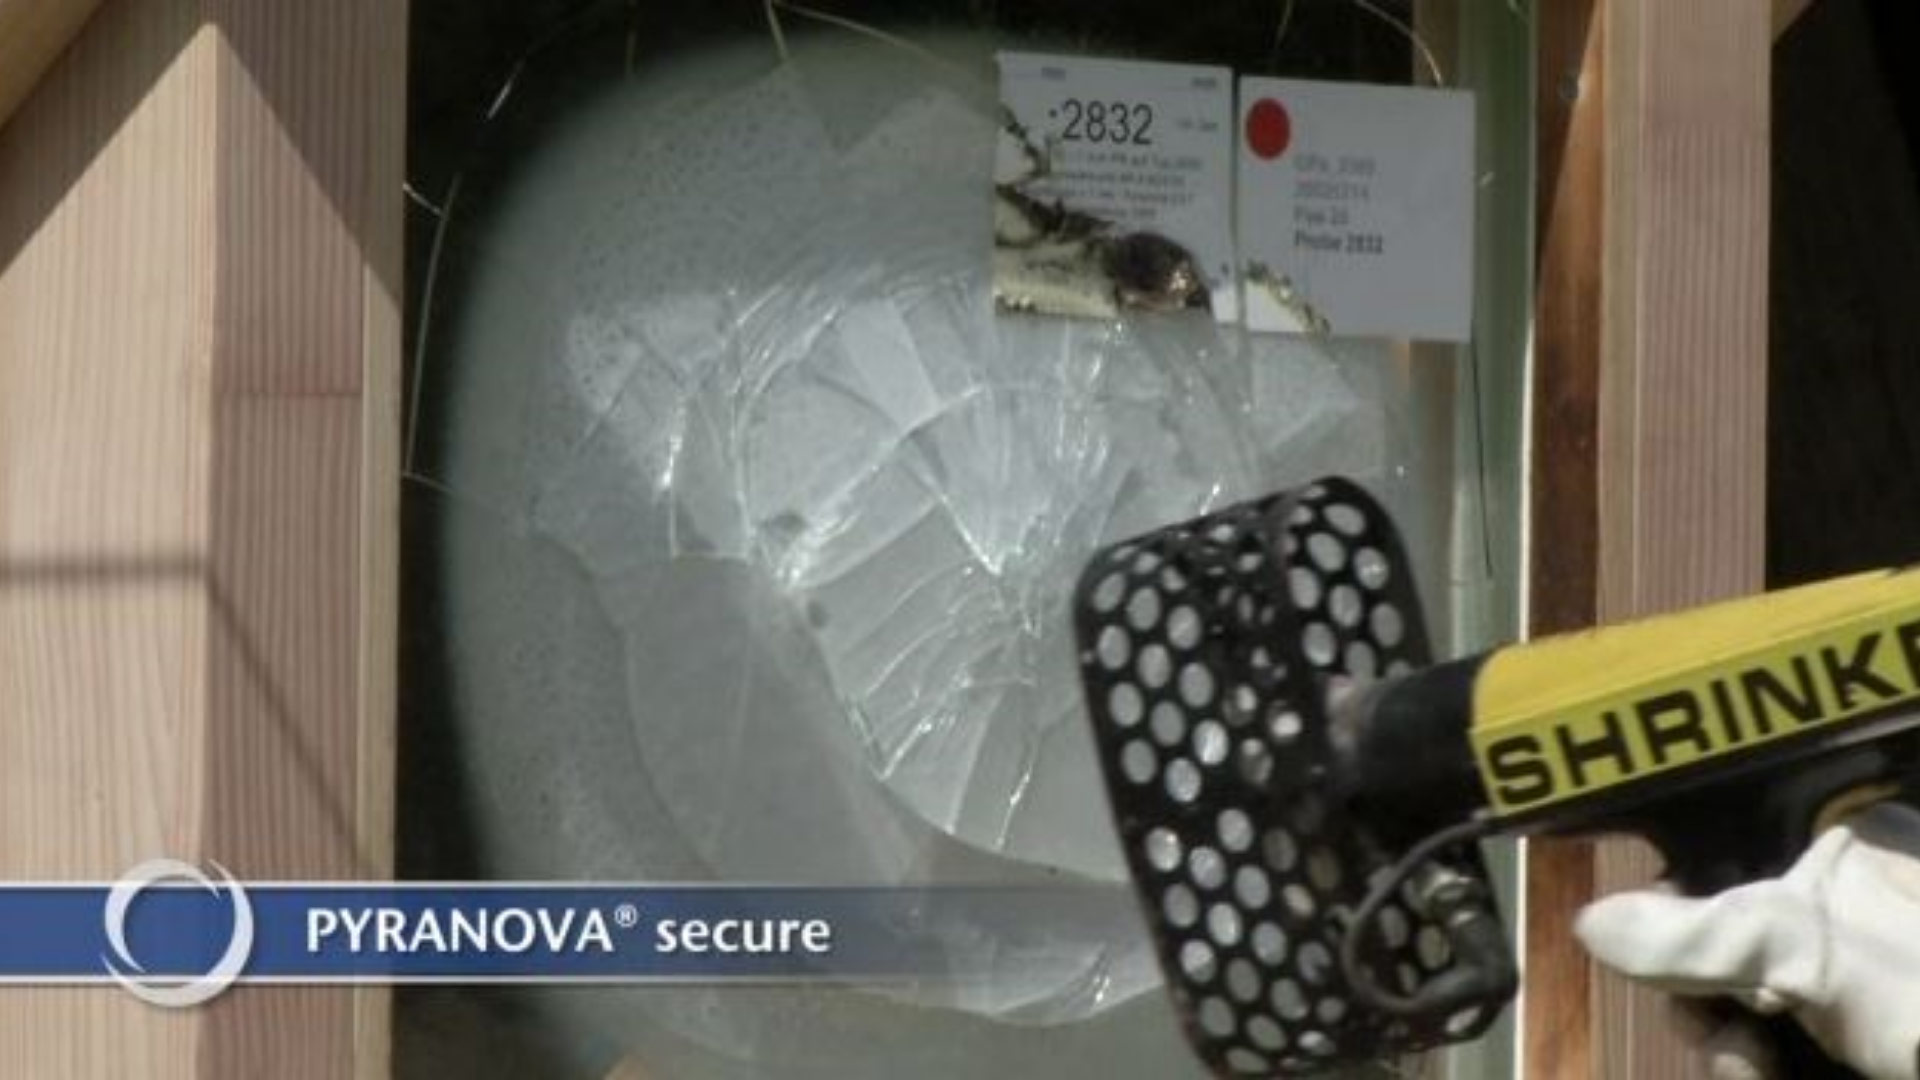 Vídeo que mostra como uma amostra do PYRANOVA® secure lida com calor, fogo e balas